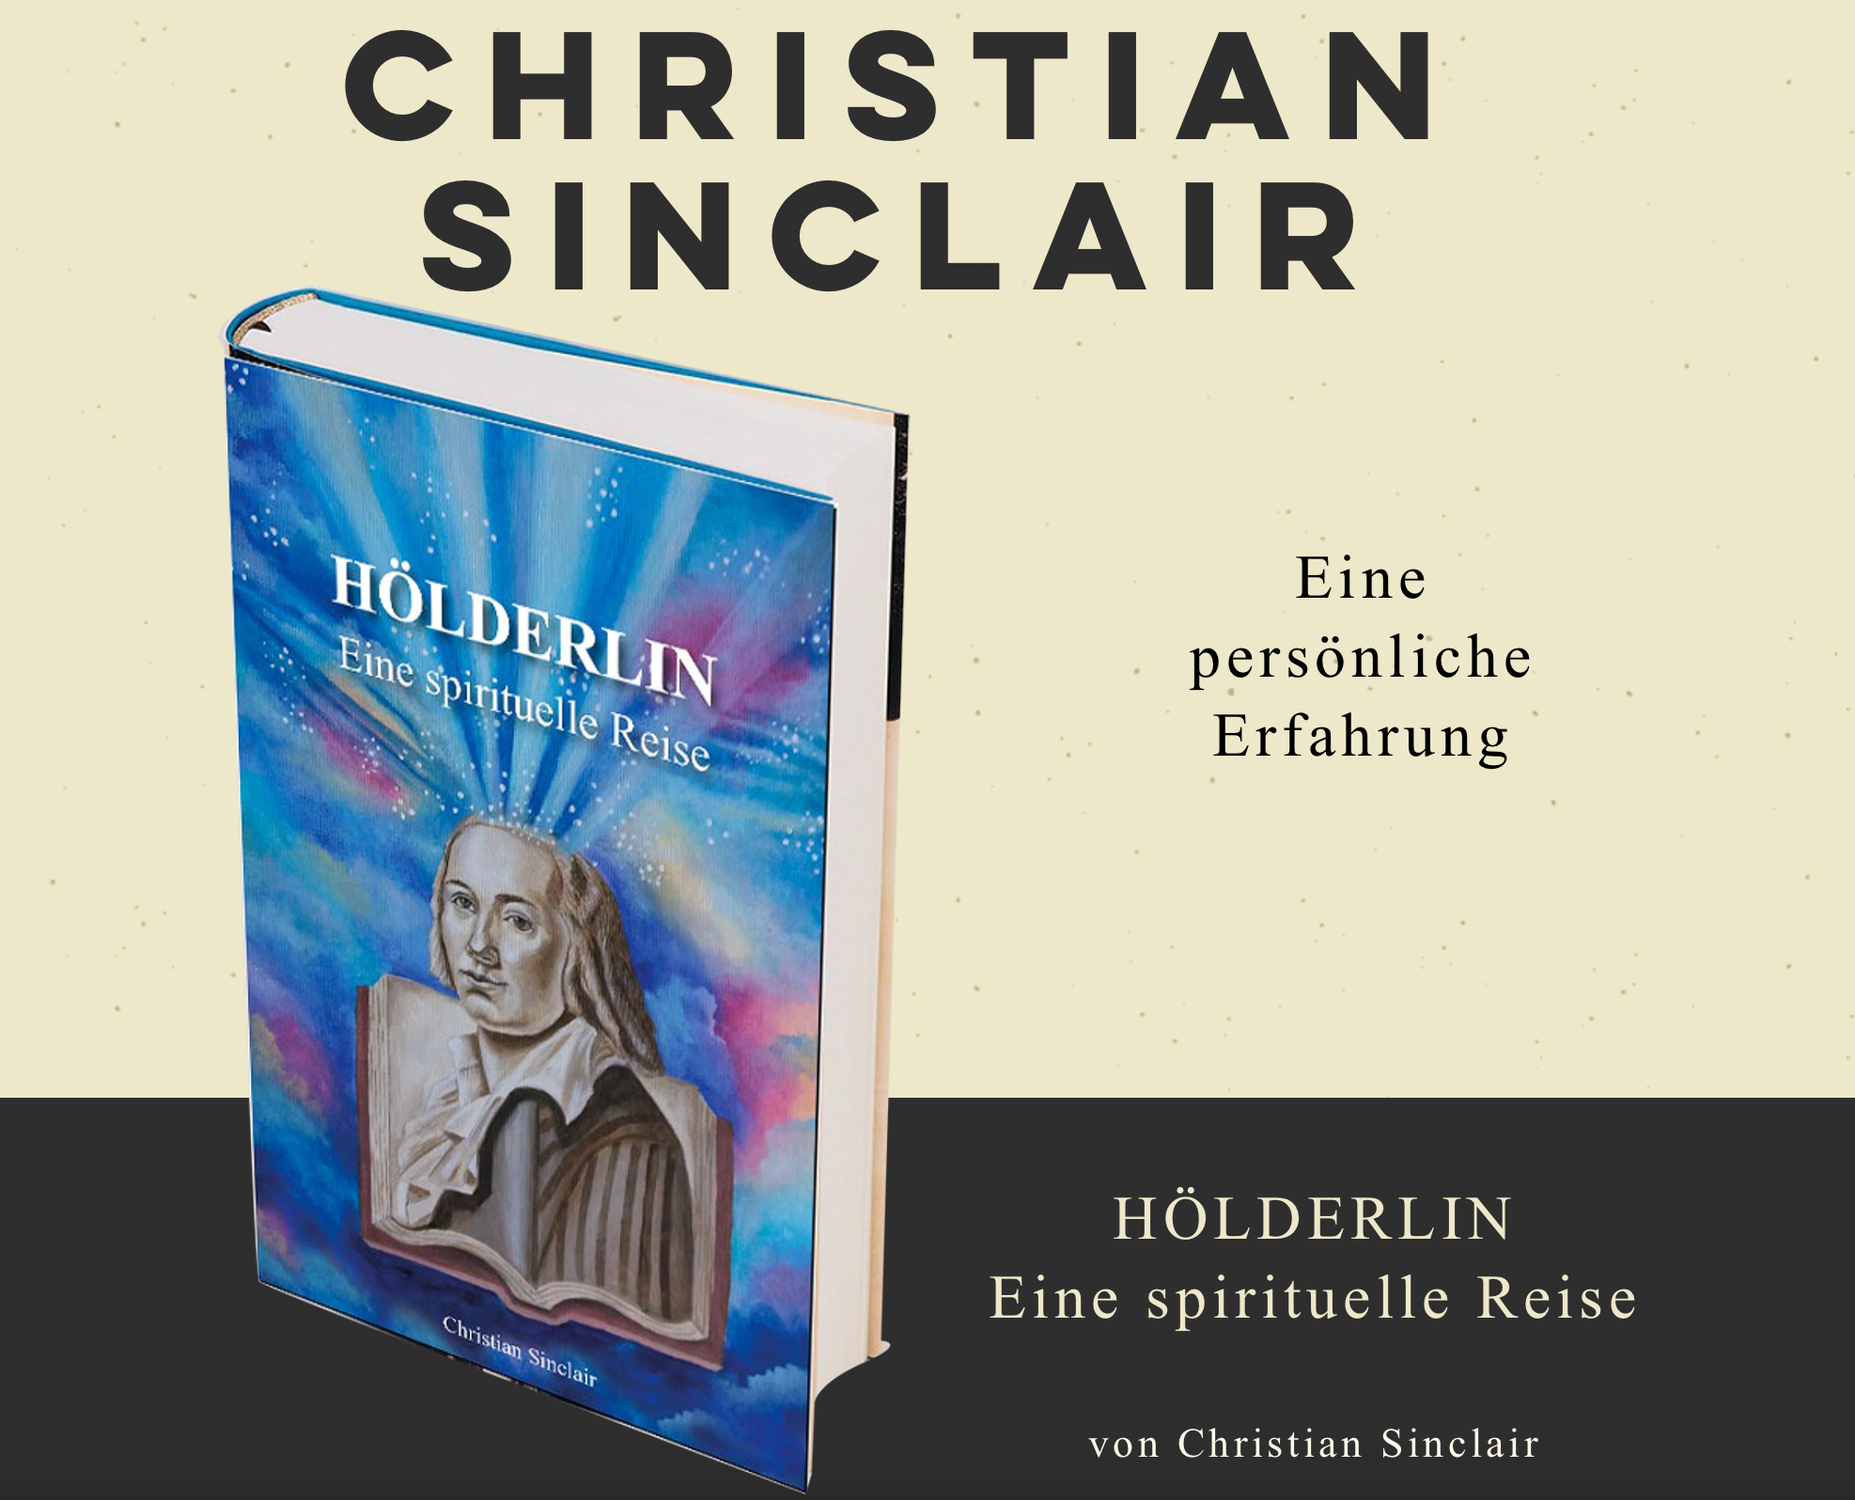 Hölderlin eine spirituelle Reise